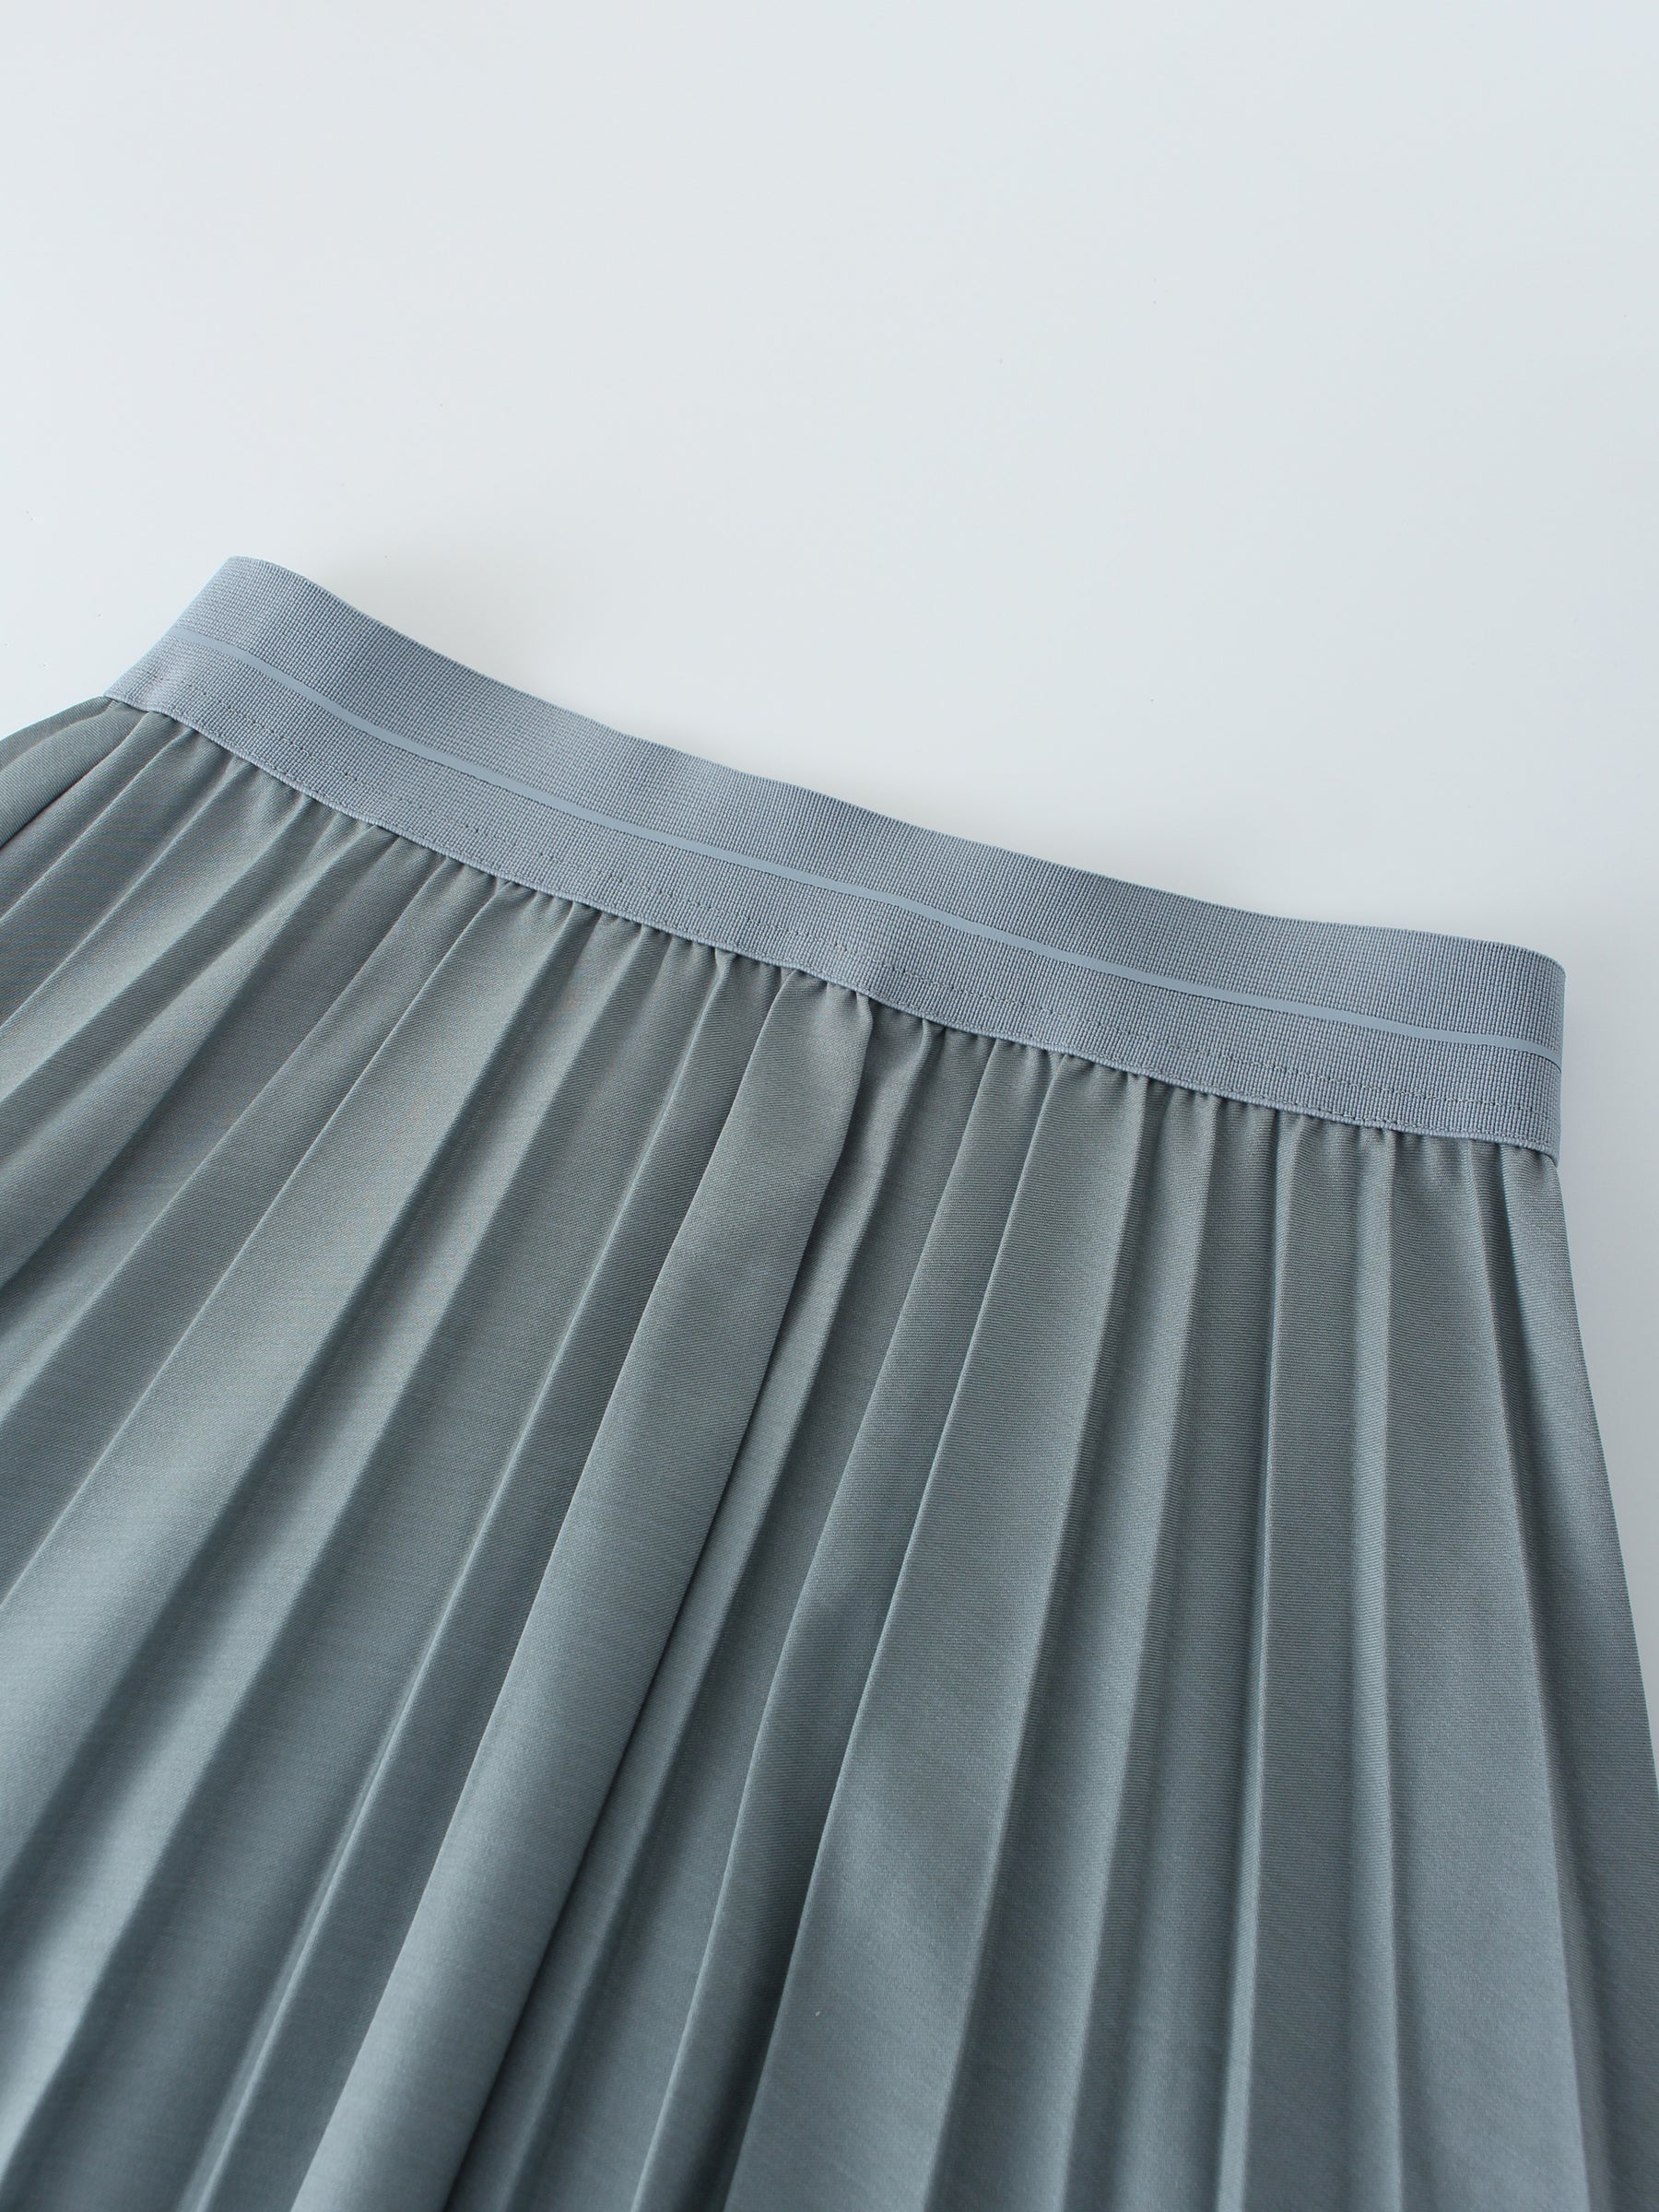 Pleated Skirt 37"-Slate Blue